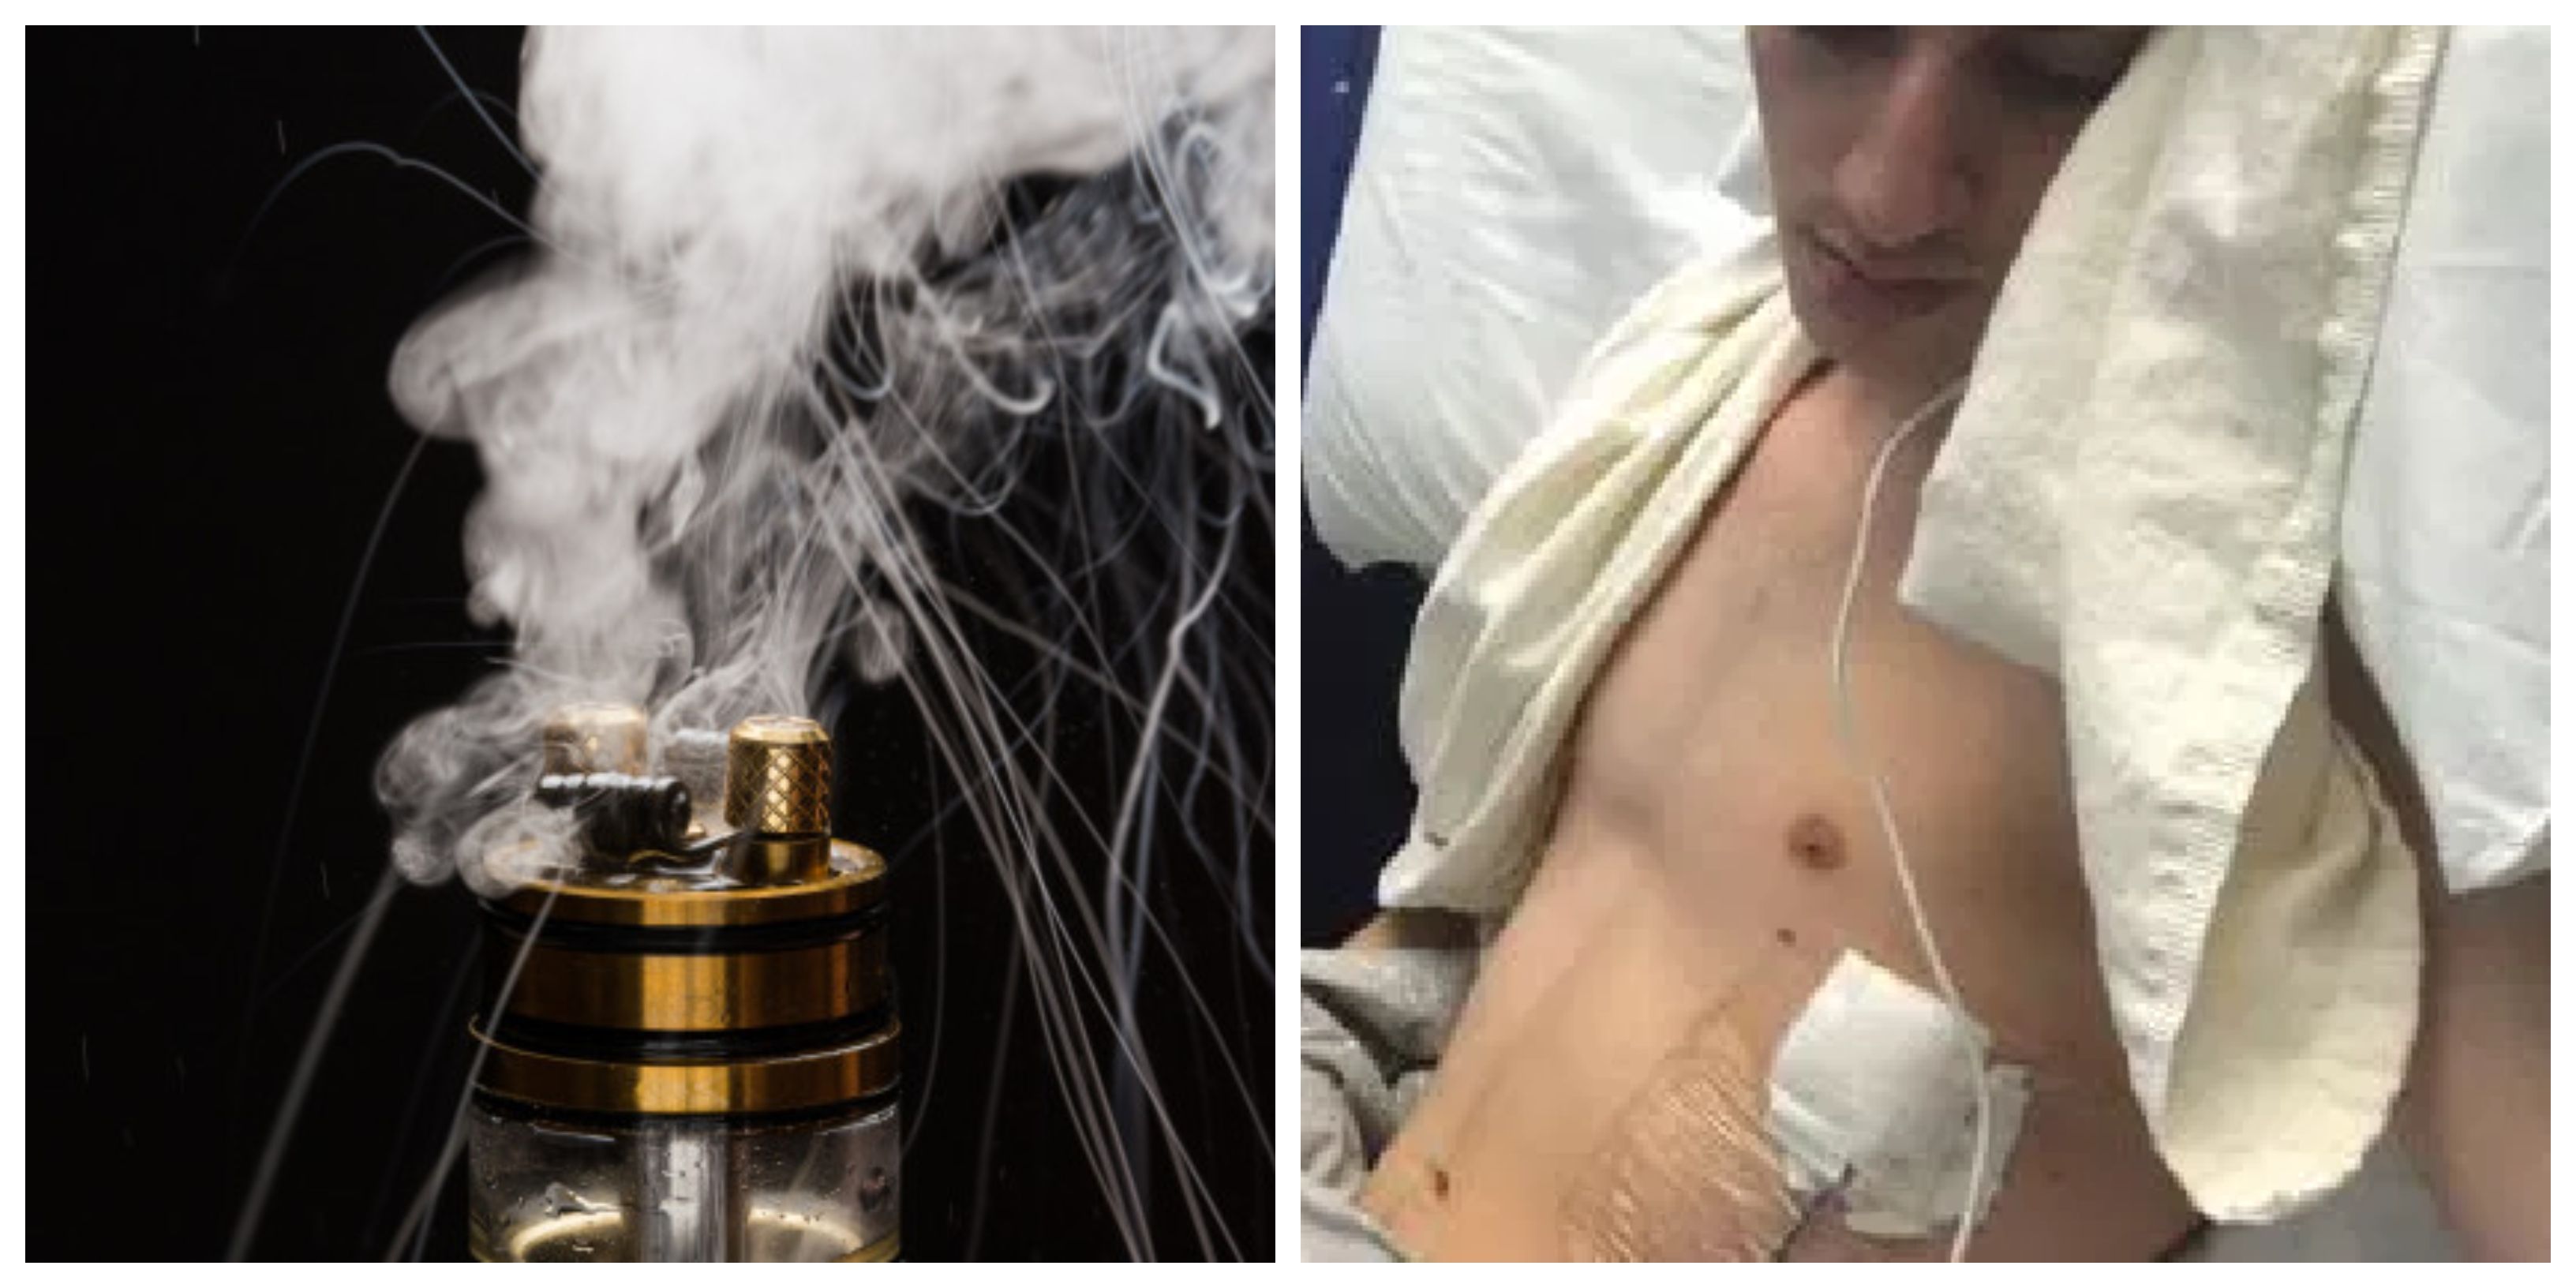 Pakai vape setahun, paru-paru mahasiswa rusak dan harus jalani operasi mendadak